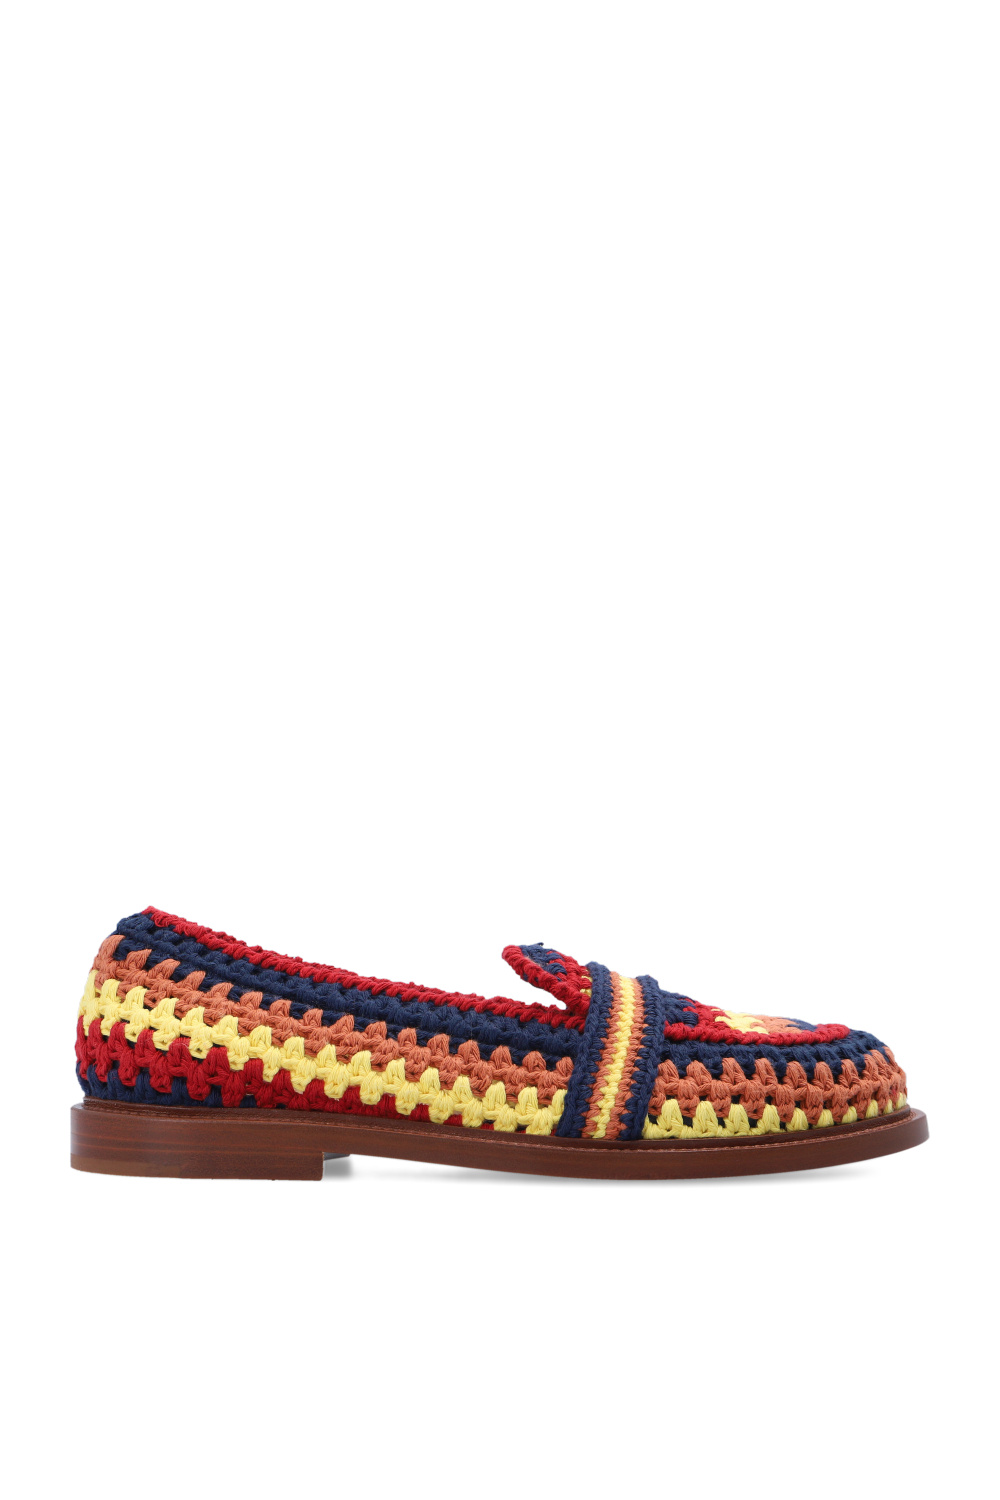 Chloé 'Kalya' loafers | Women's Shoes | Vitkac